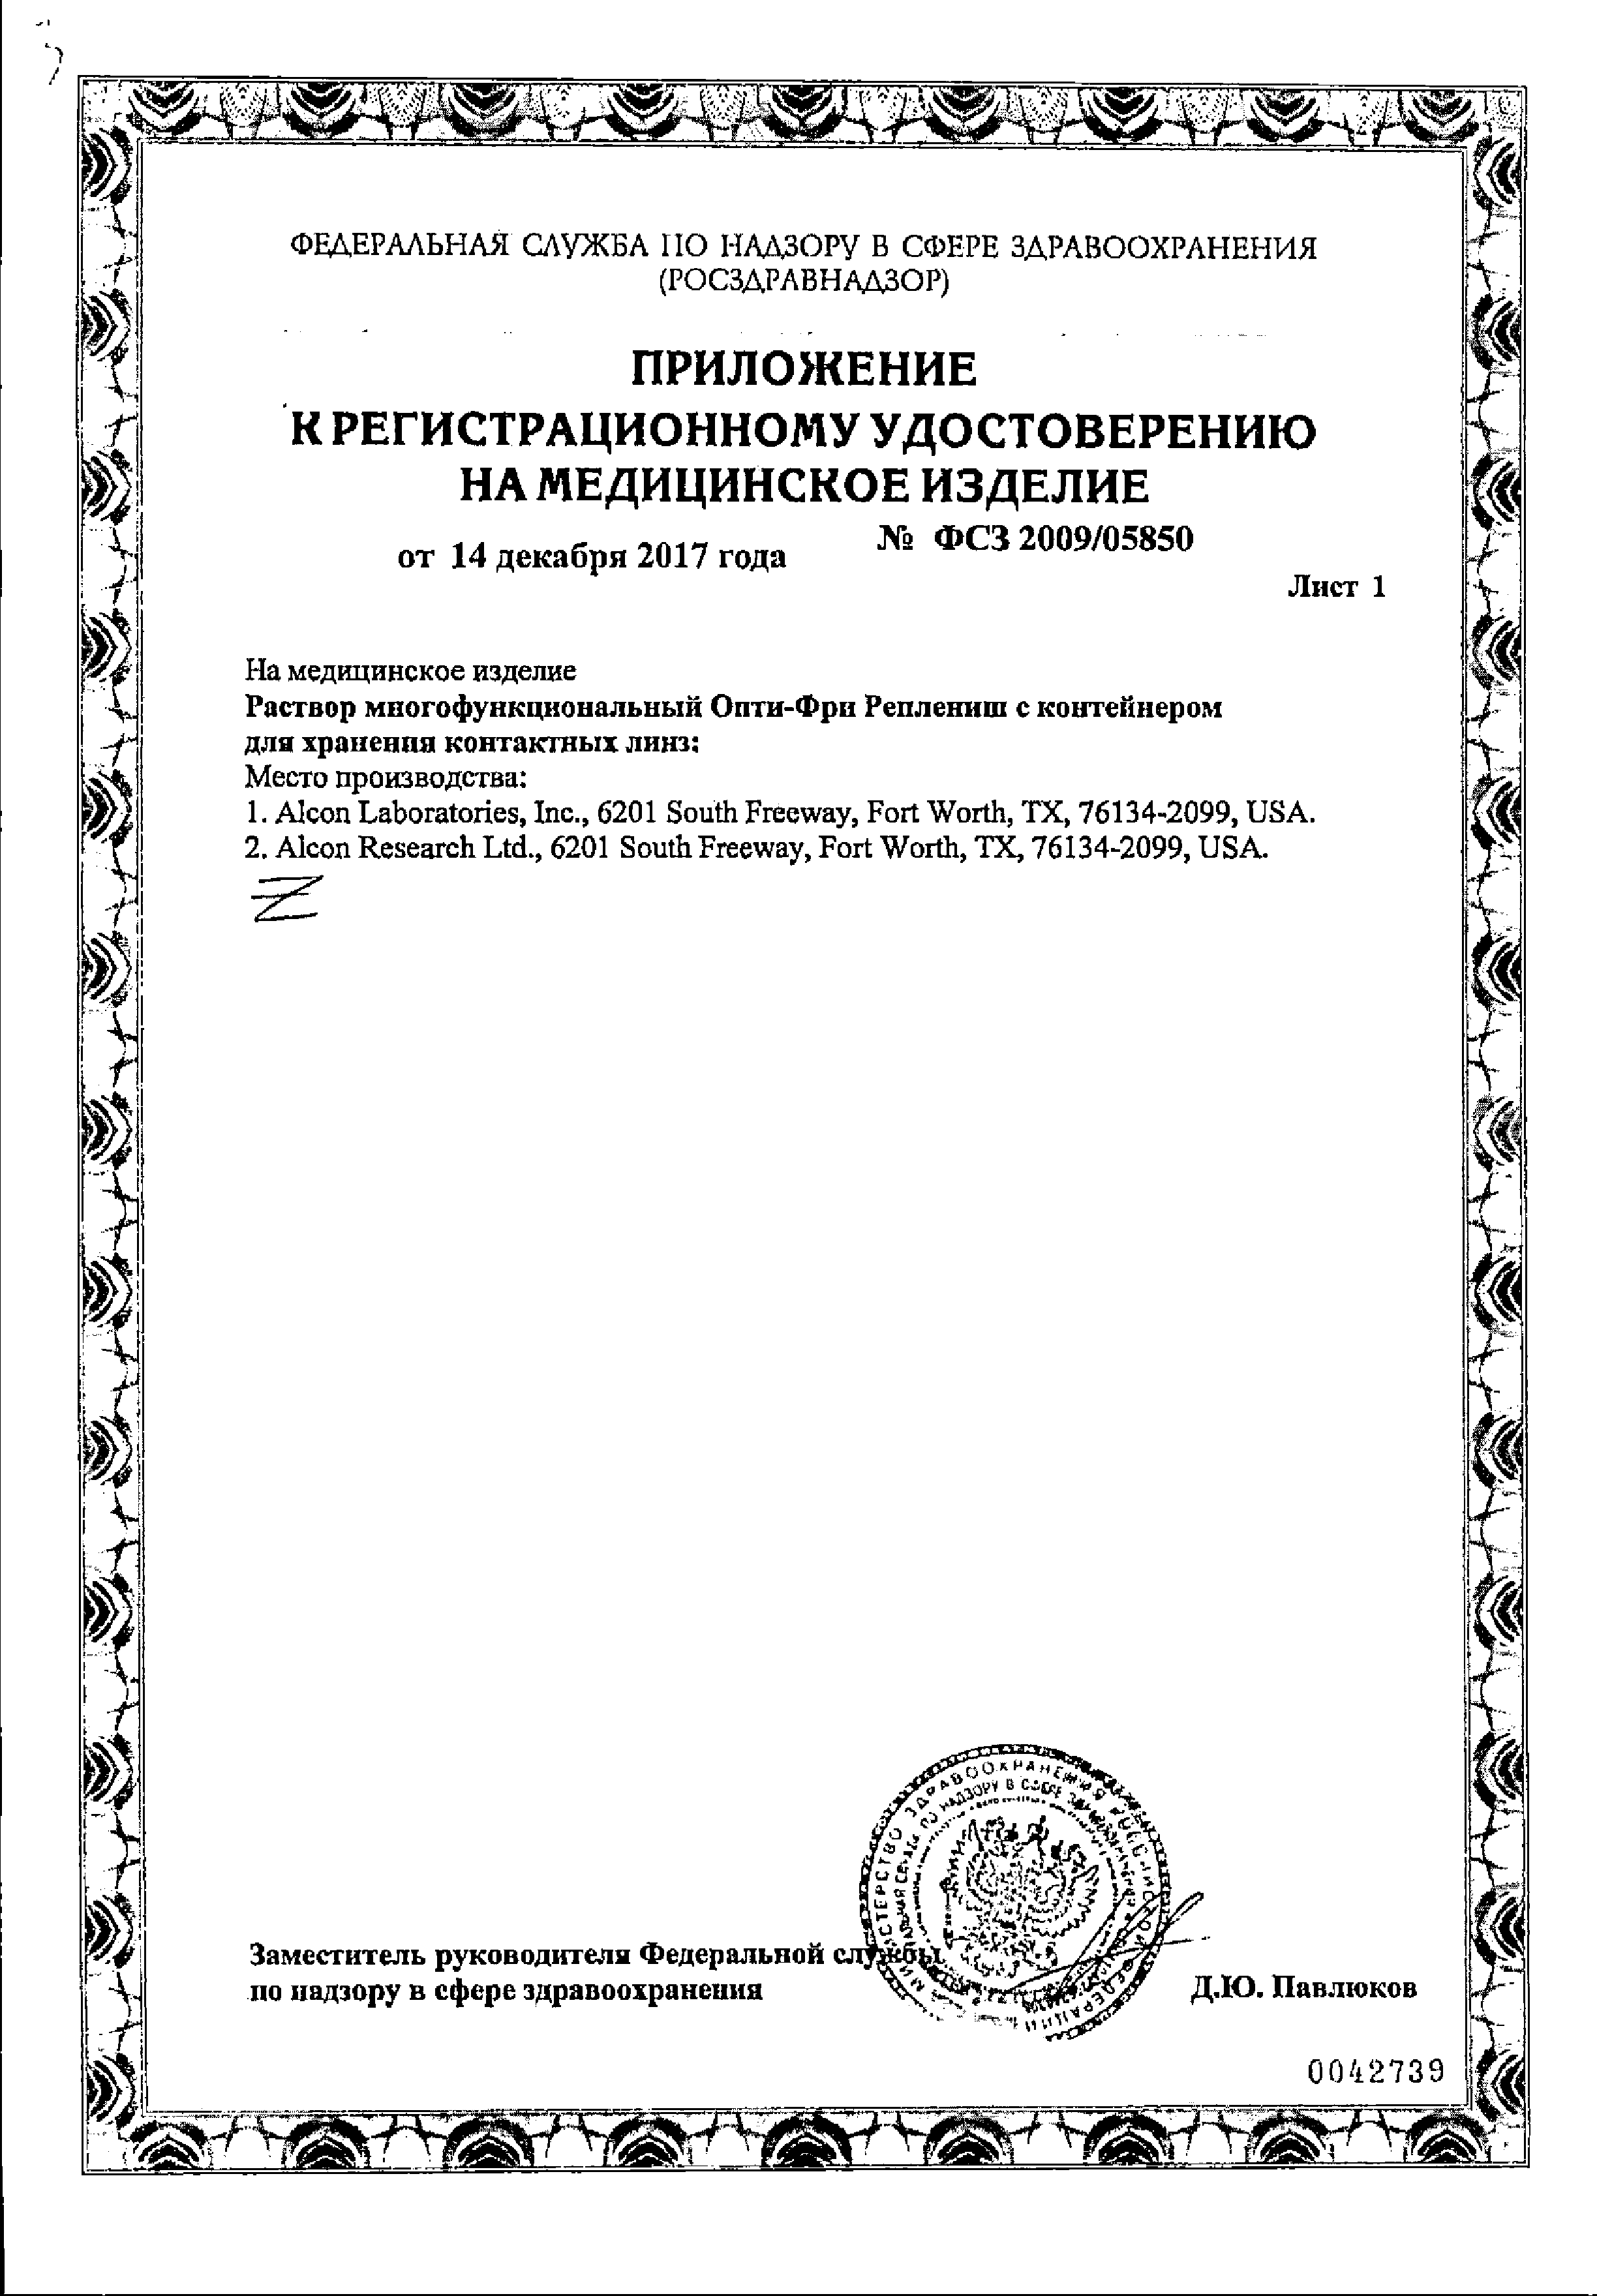 Опти-Фри Реплениш сертификат